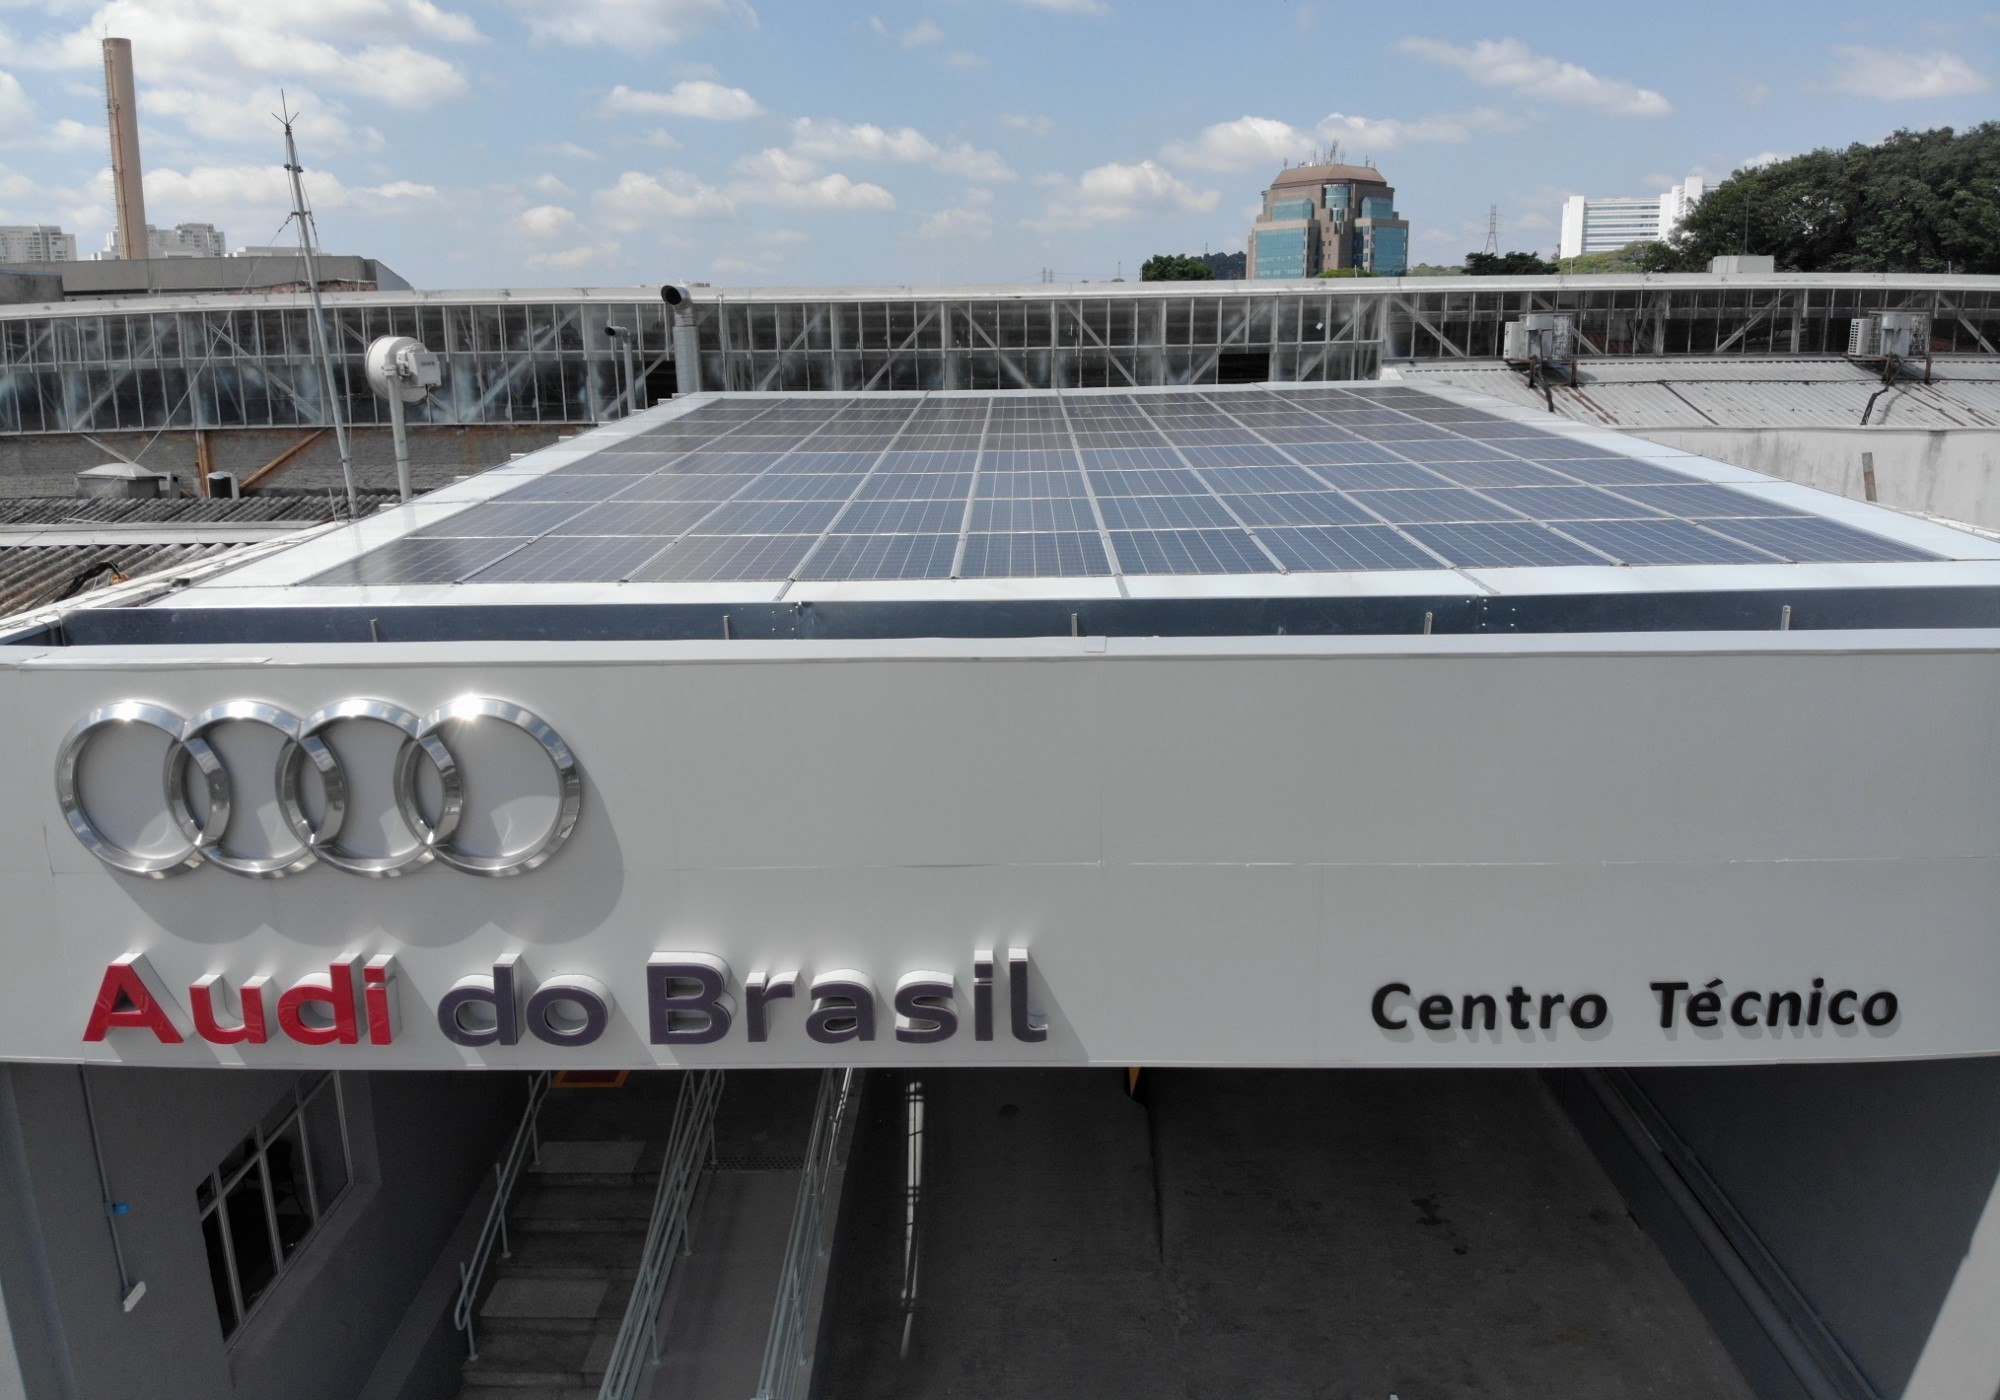 Audi investe em energia 100% limpa em seu centro técnico